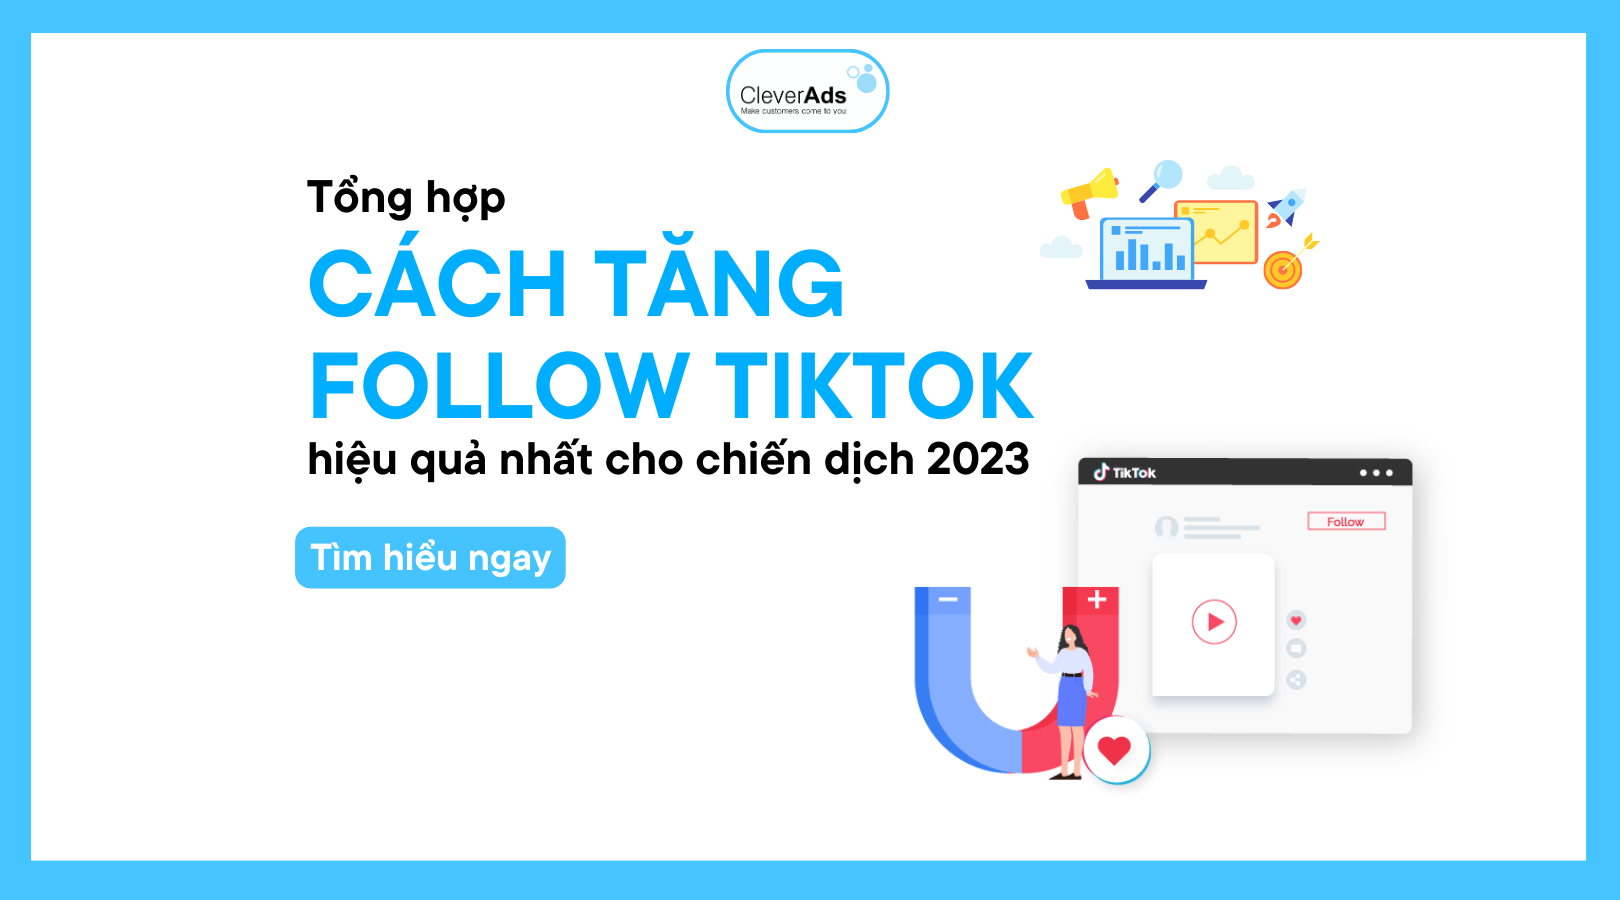 Tổng hợp: Cách tăng follow TikTok 2023